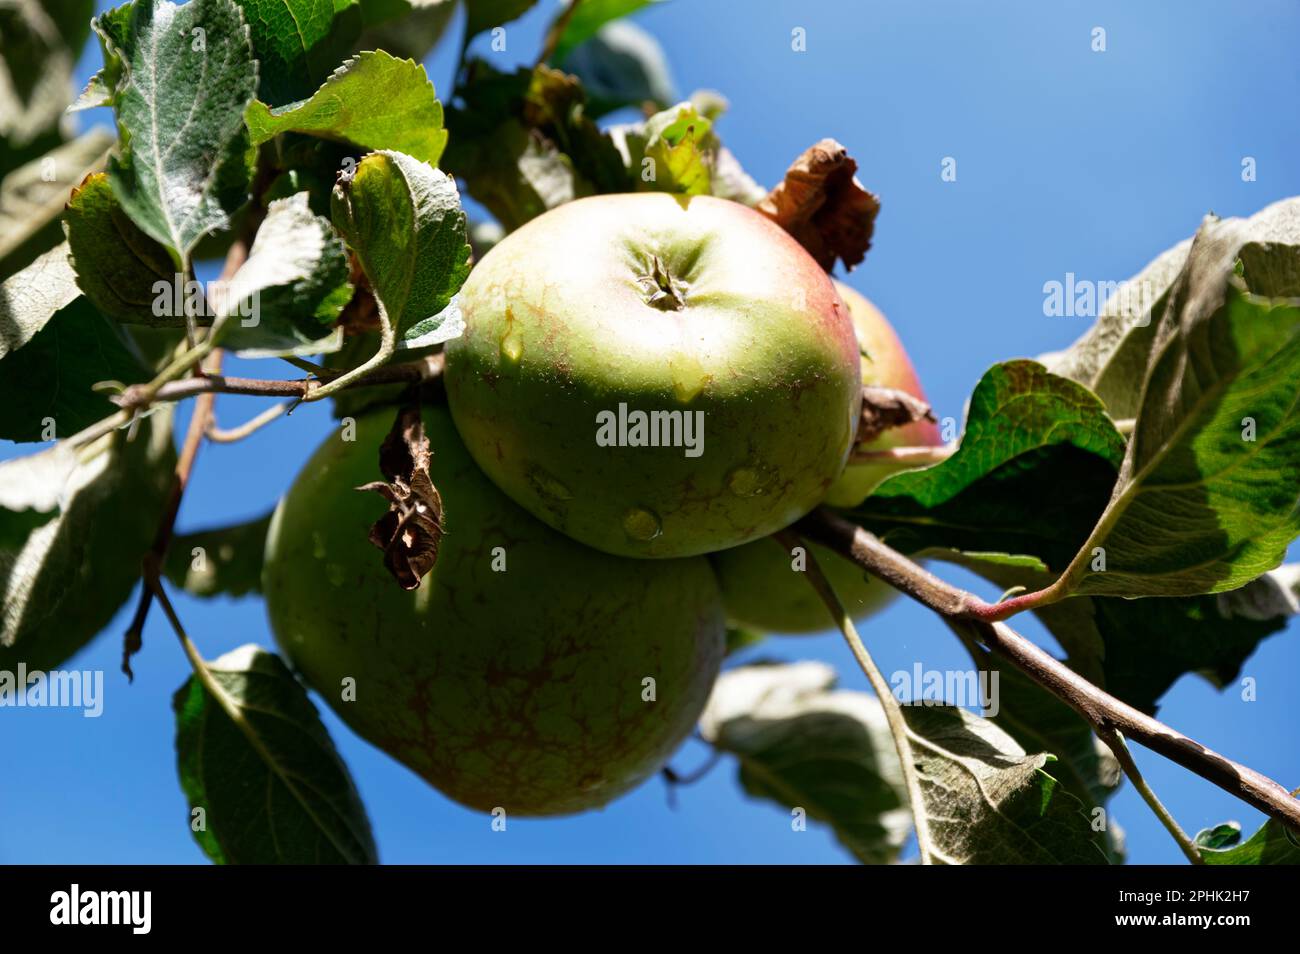 Les pommes mûrissent au soleil, le fond de la pomme, de la fleur ou du calice fait face à la caméra. Banque D'Images